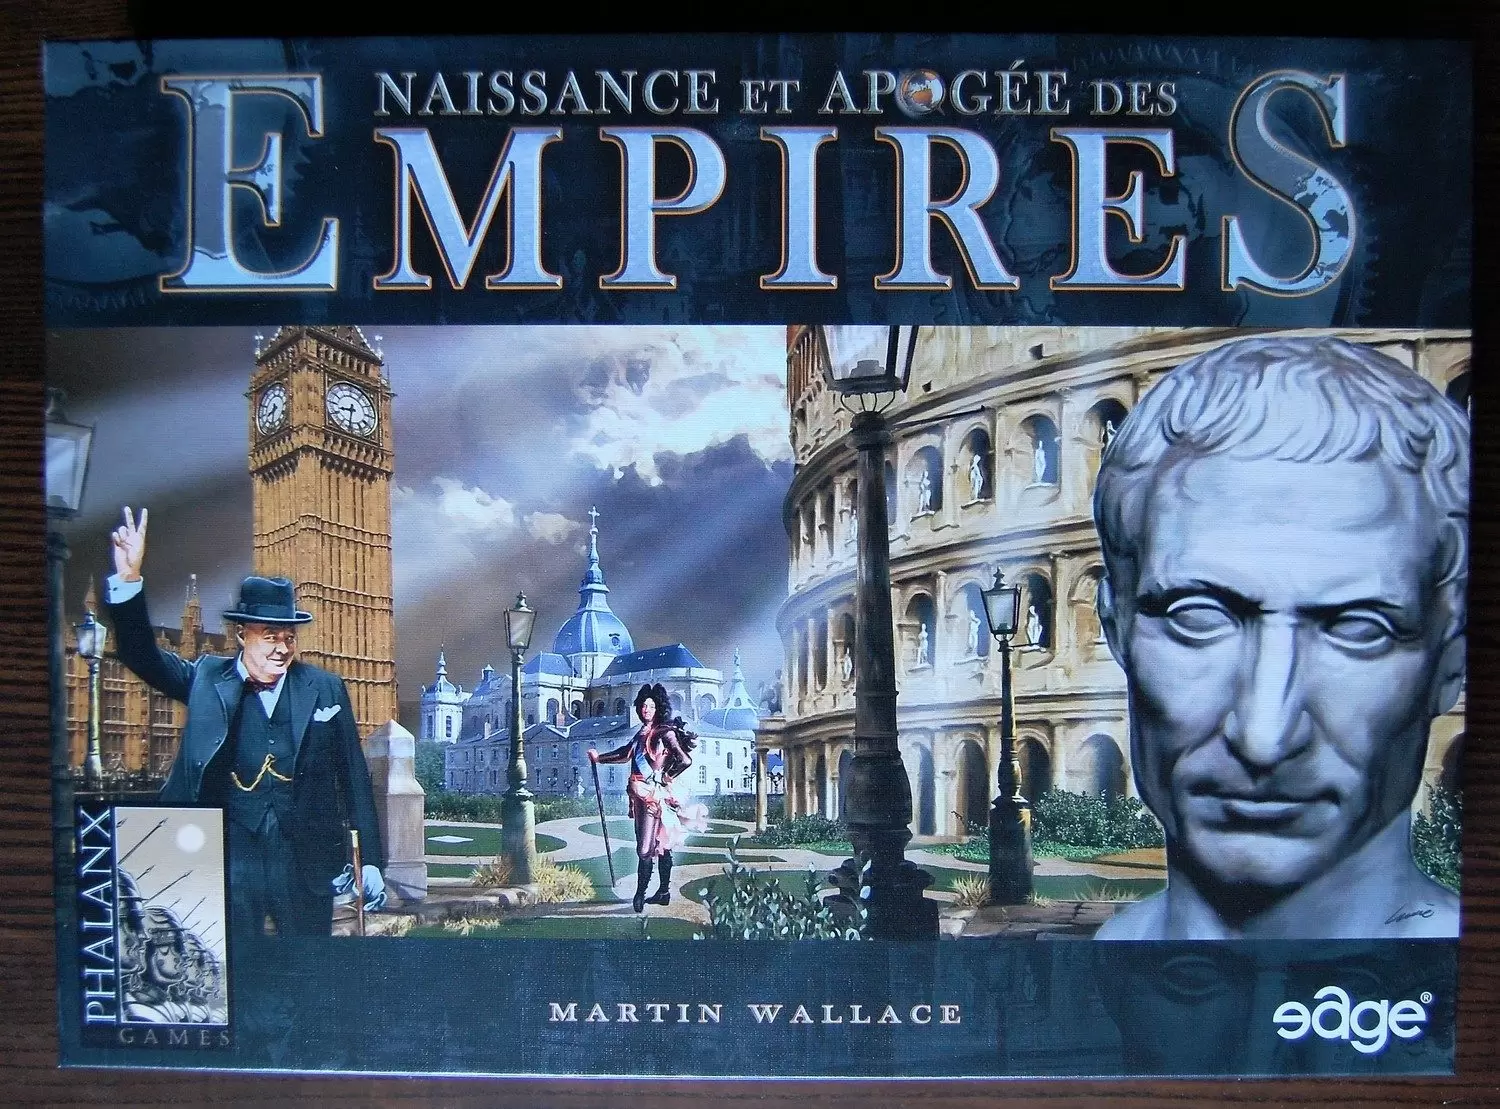 EDGE - Naissance et apogée des Empires